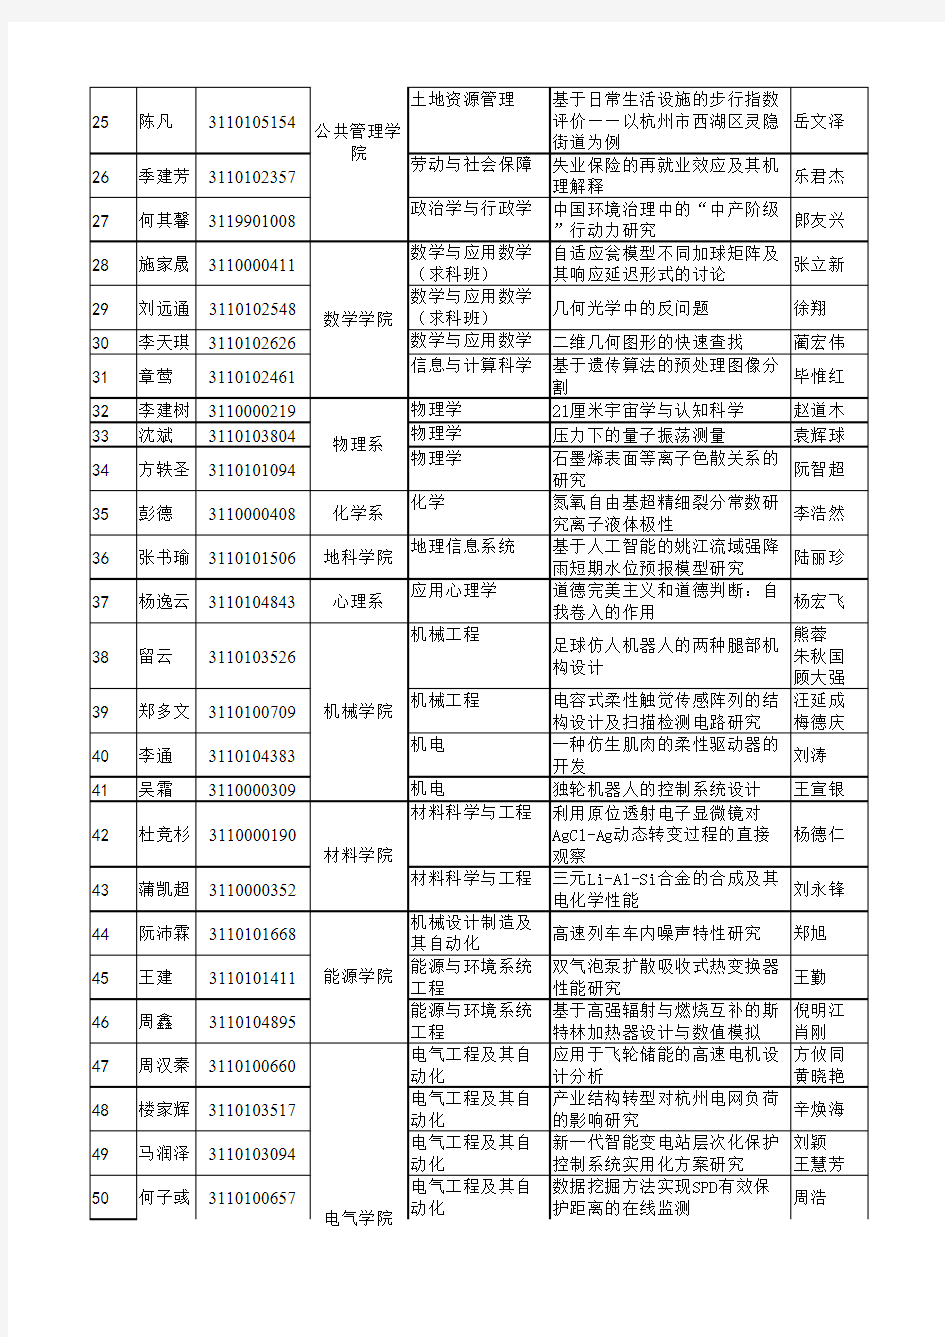 浙江大学2015届百篇特优本科毕业设计(论文)公示名单